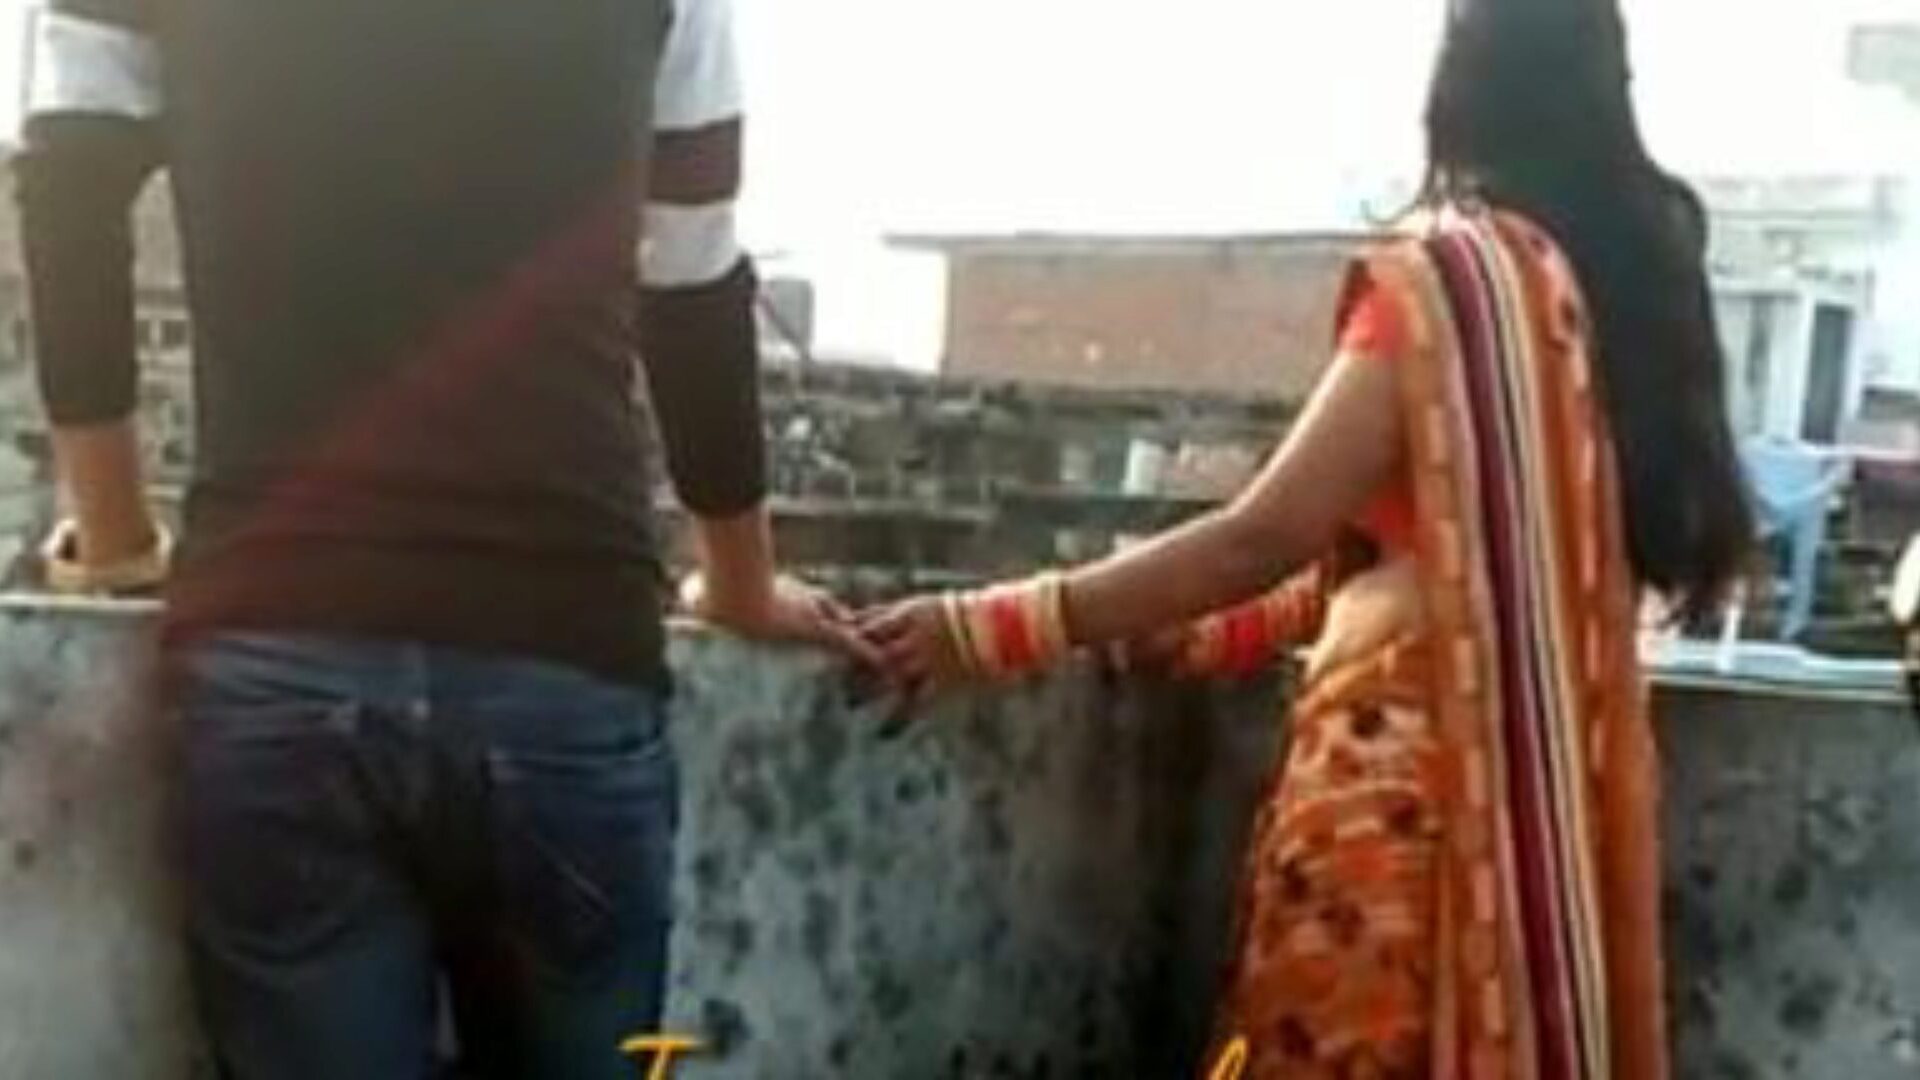 indiai házi készítésű videók kibaszott barátjának felesége: ingyenes pornó fd nézés indiai házi készítésű videó kibaszott barátnőjének filmje a xhamsteren